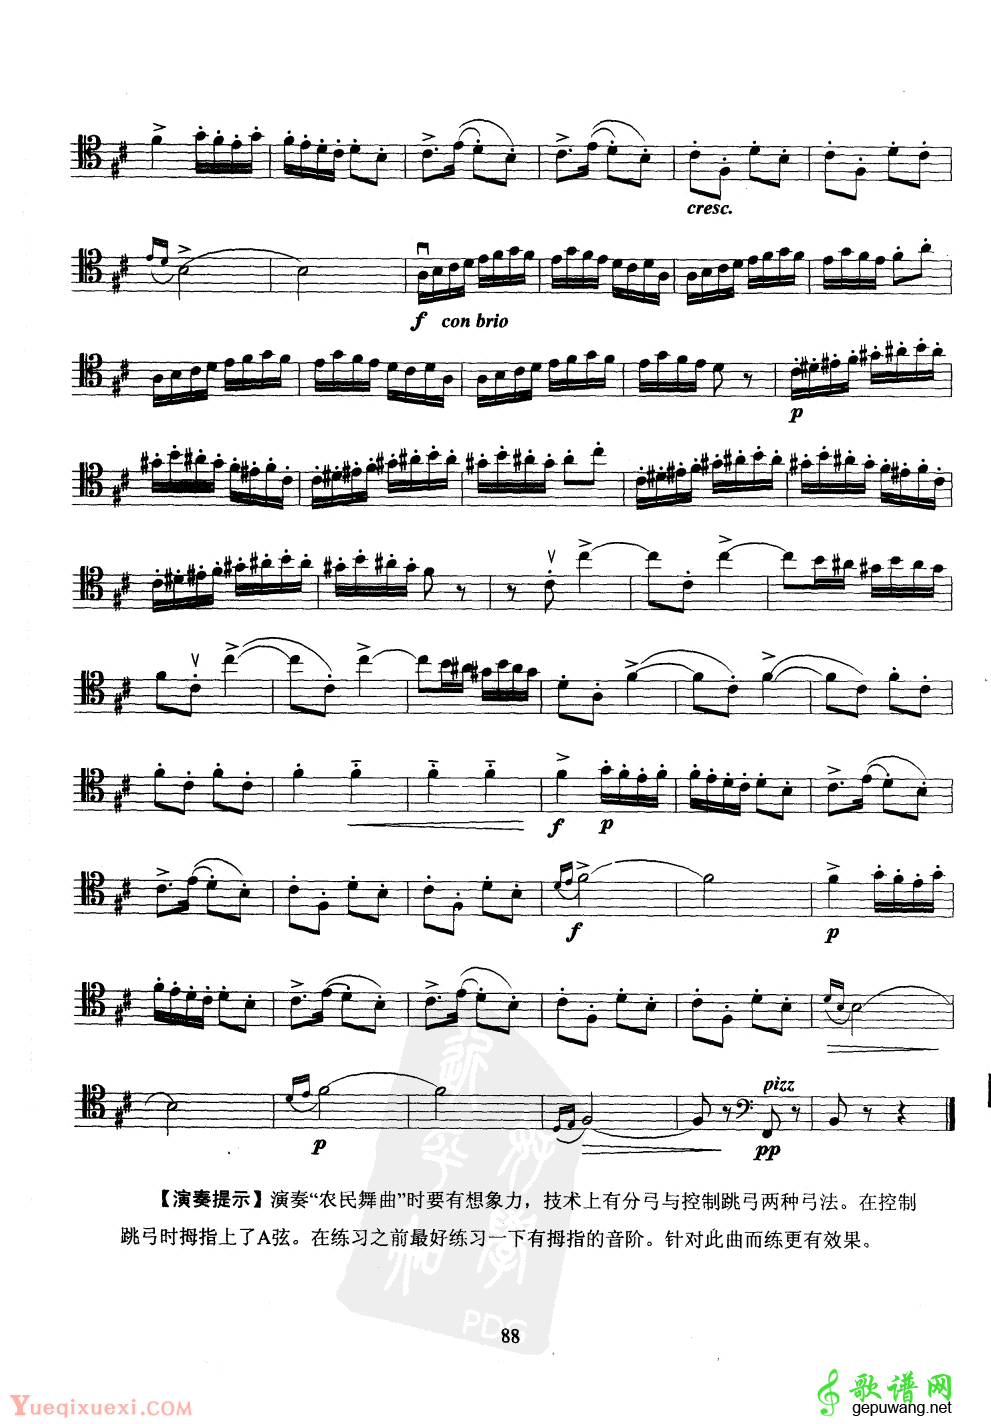 大提琴第九级乐曲练习谱